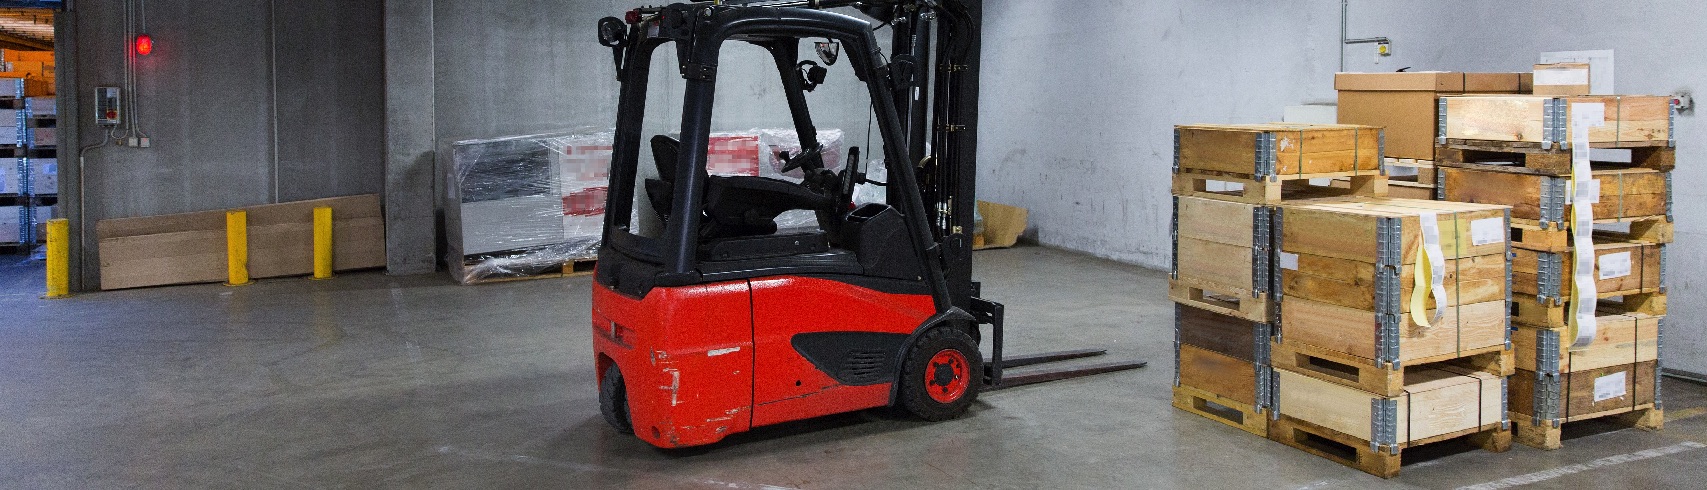 Forklift Rental Baltimore, MD - Tobly Equipment Rental